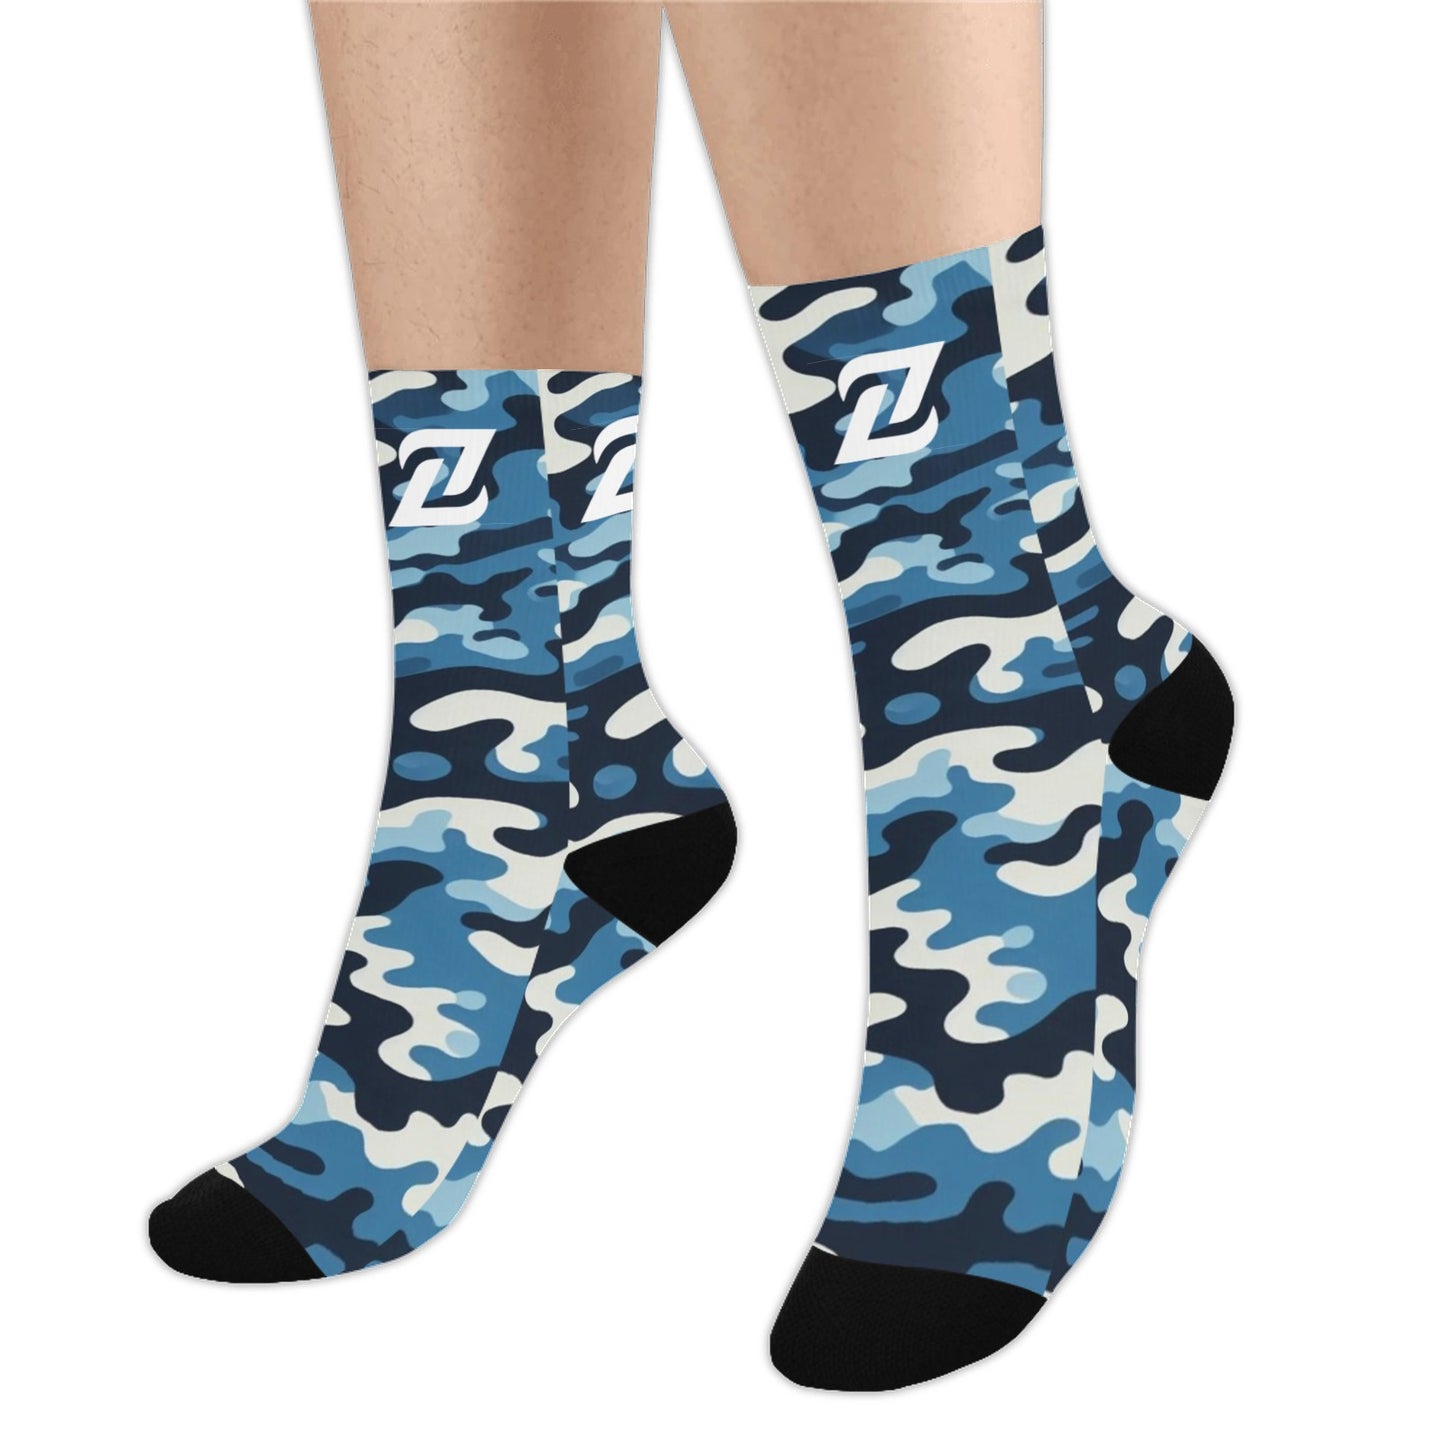 Zen Socks - Blue Camo